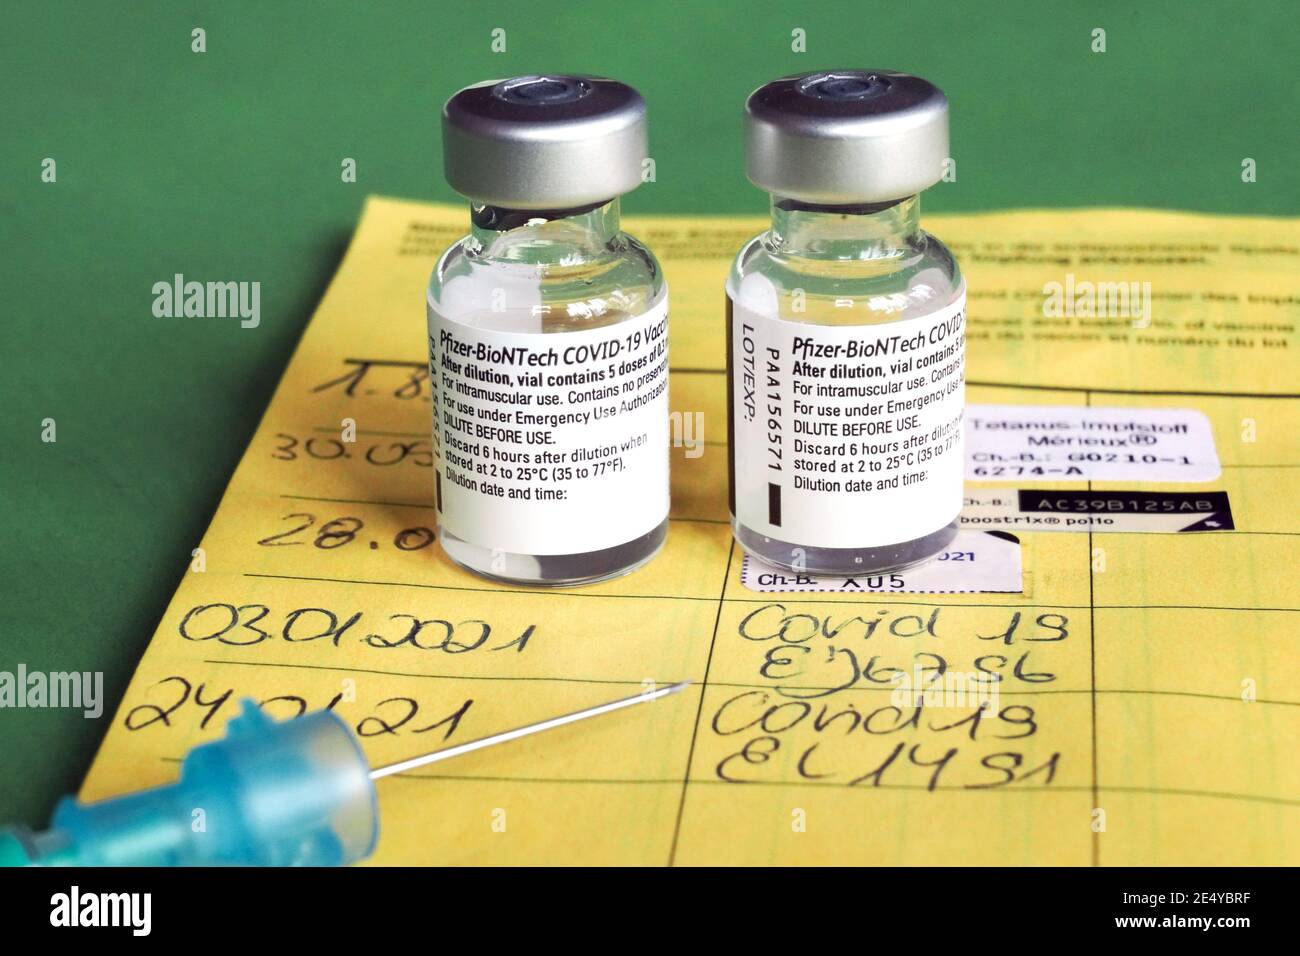 Symbolbild Corona-Impfung. Zwei Impfdosen, Impfritze und der Eintrag der ersten und zweiten Corona-Impfdung in einem Impfpass einer mit dem COVID-19-mRNA-Impfstoff der Firma BioNTech geimpften Person. Dortmund, 25.01.2021 --- Corona-Impfsymbole. Zwei Impfdosen, Impfspritze und Eintrag der ersten und zweiten Coronaimpfung in einen deutschen Impfpass einer mit dem COVID-19 mRNA-Impfstoff von BioNTech geimpften Person. Dortmund, den 25th. Januar 2021 Stockfoto